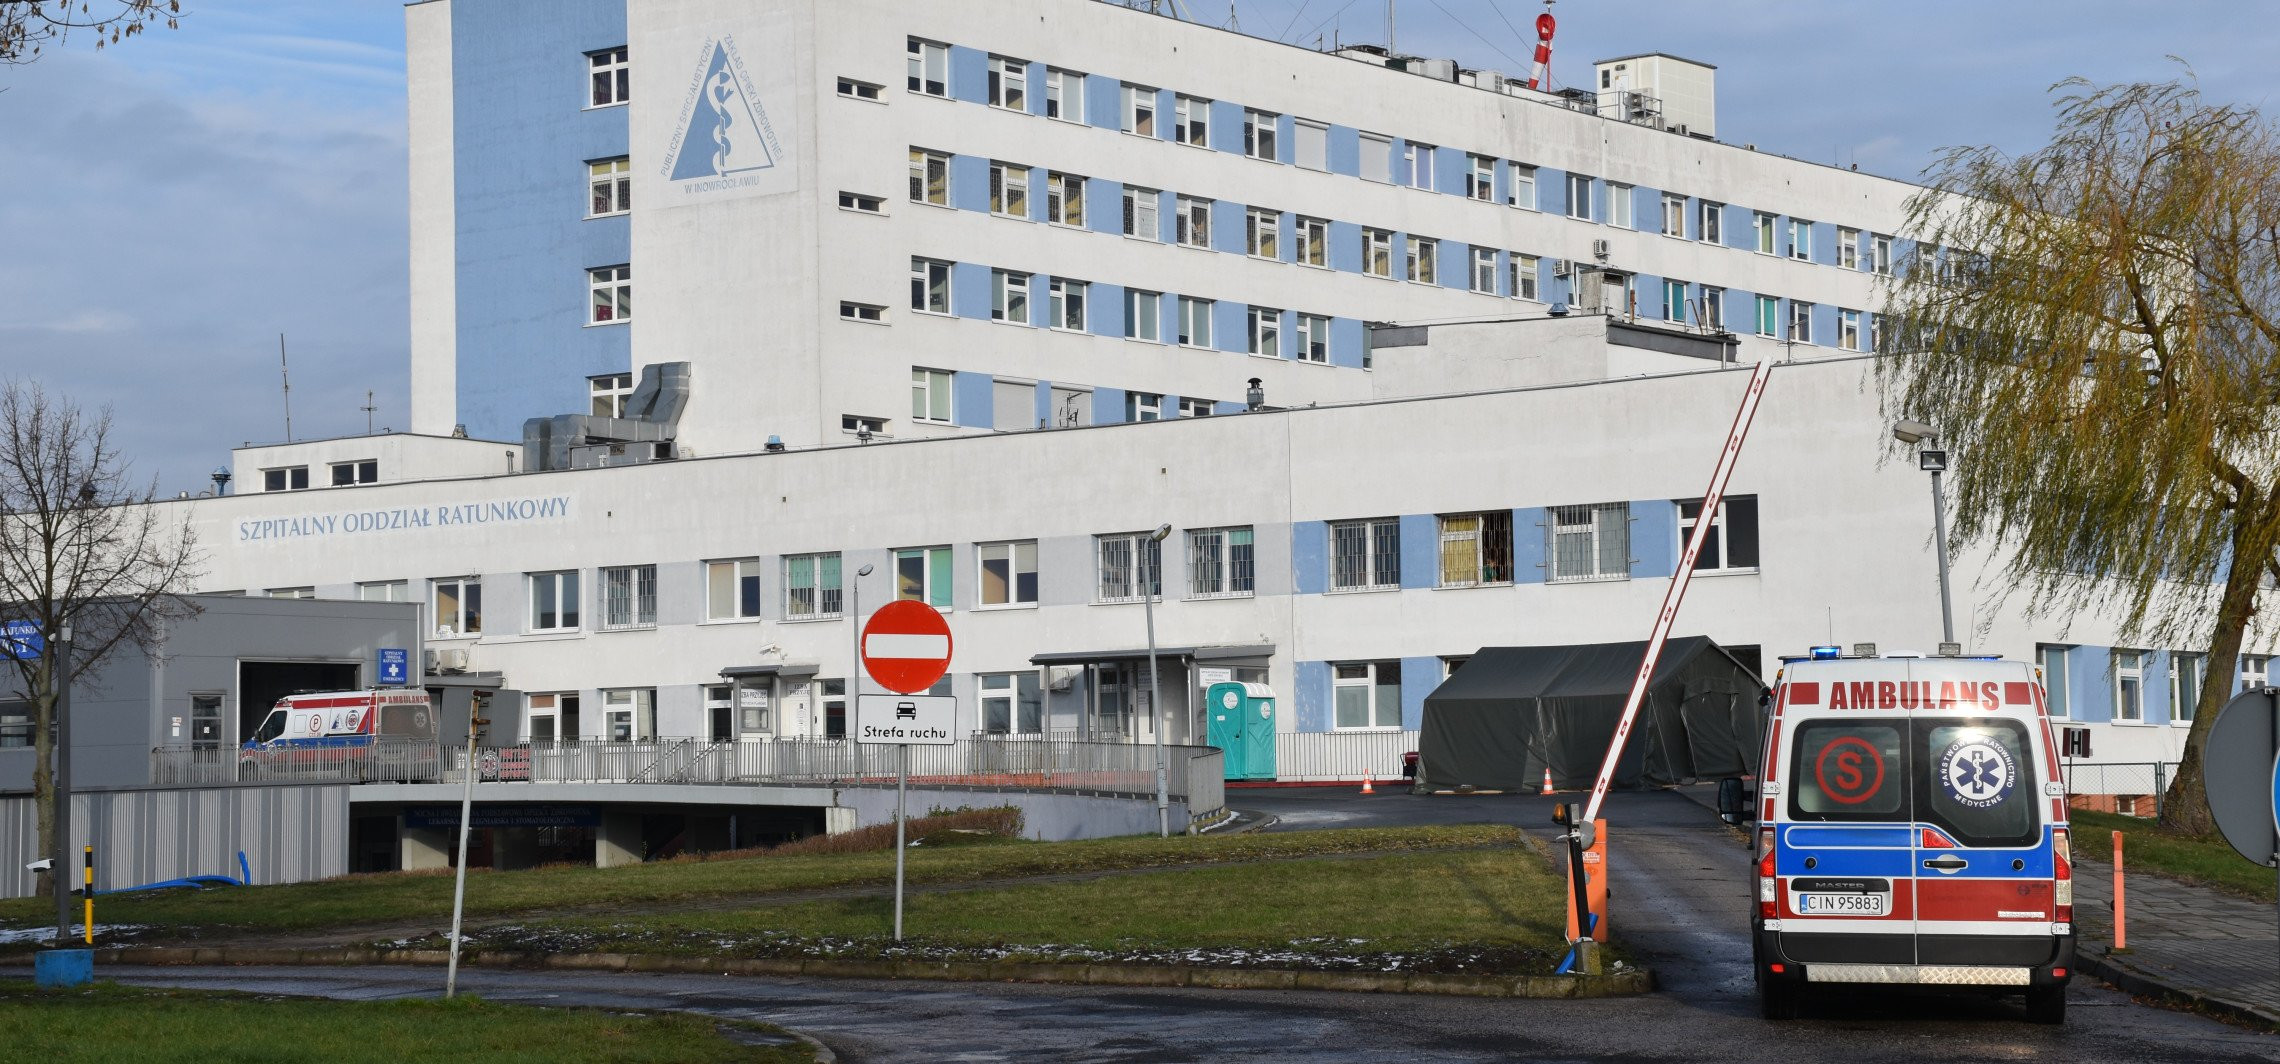 Inowrocław - Dwa szpitalne oddziały nie przyjmują pacjentów